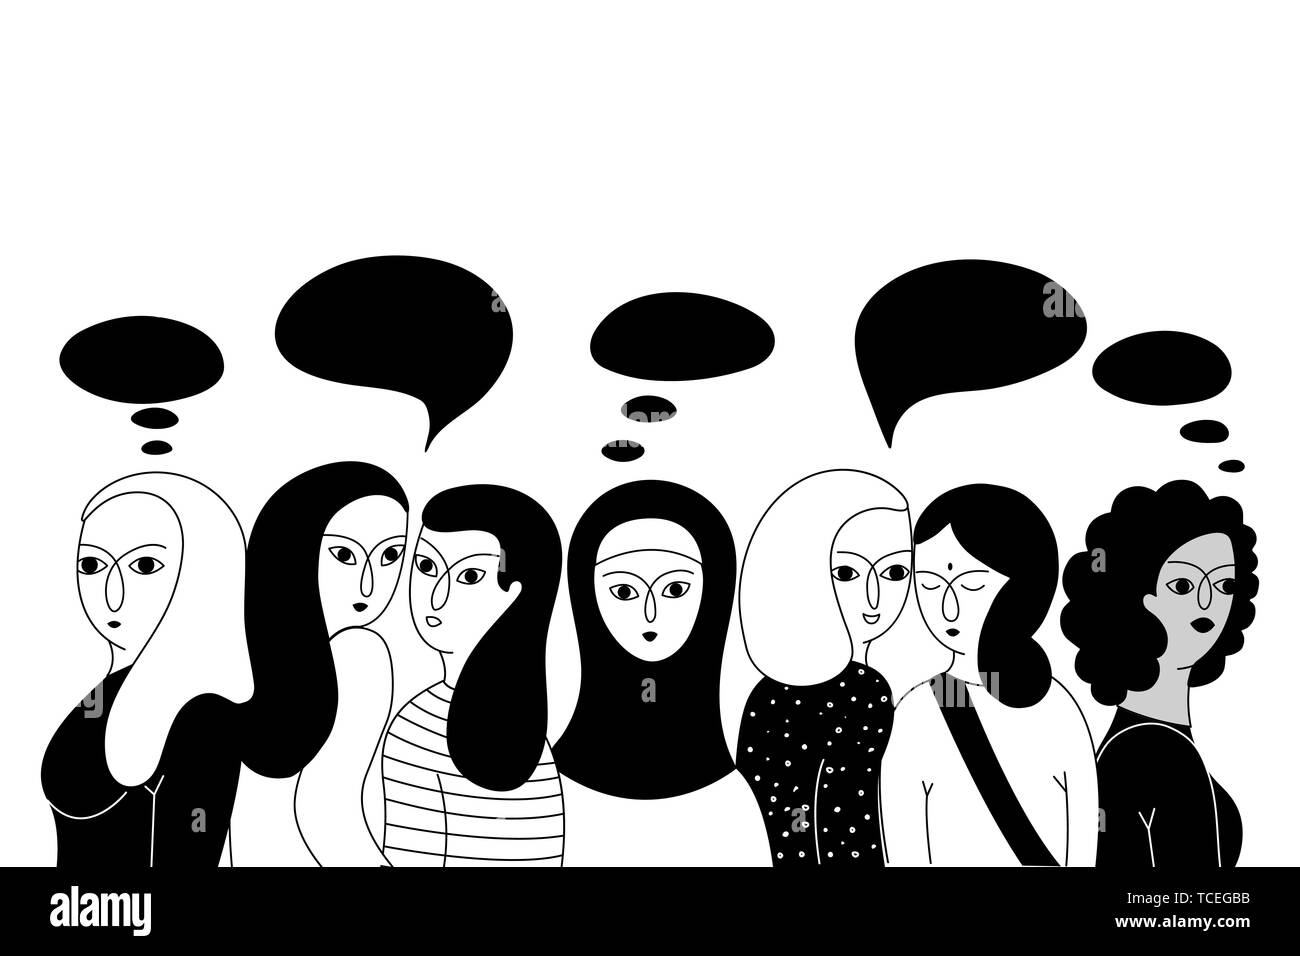 Multikulturelle Gruppe von Frauen (Muslim, Asiatischen, Europäischen, Hindu) auf einem weißen Hintergrund. Soziale Vielfalt. Doodle cartoon Vector Illustration. Stock Vektor